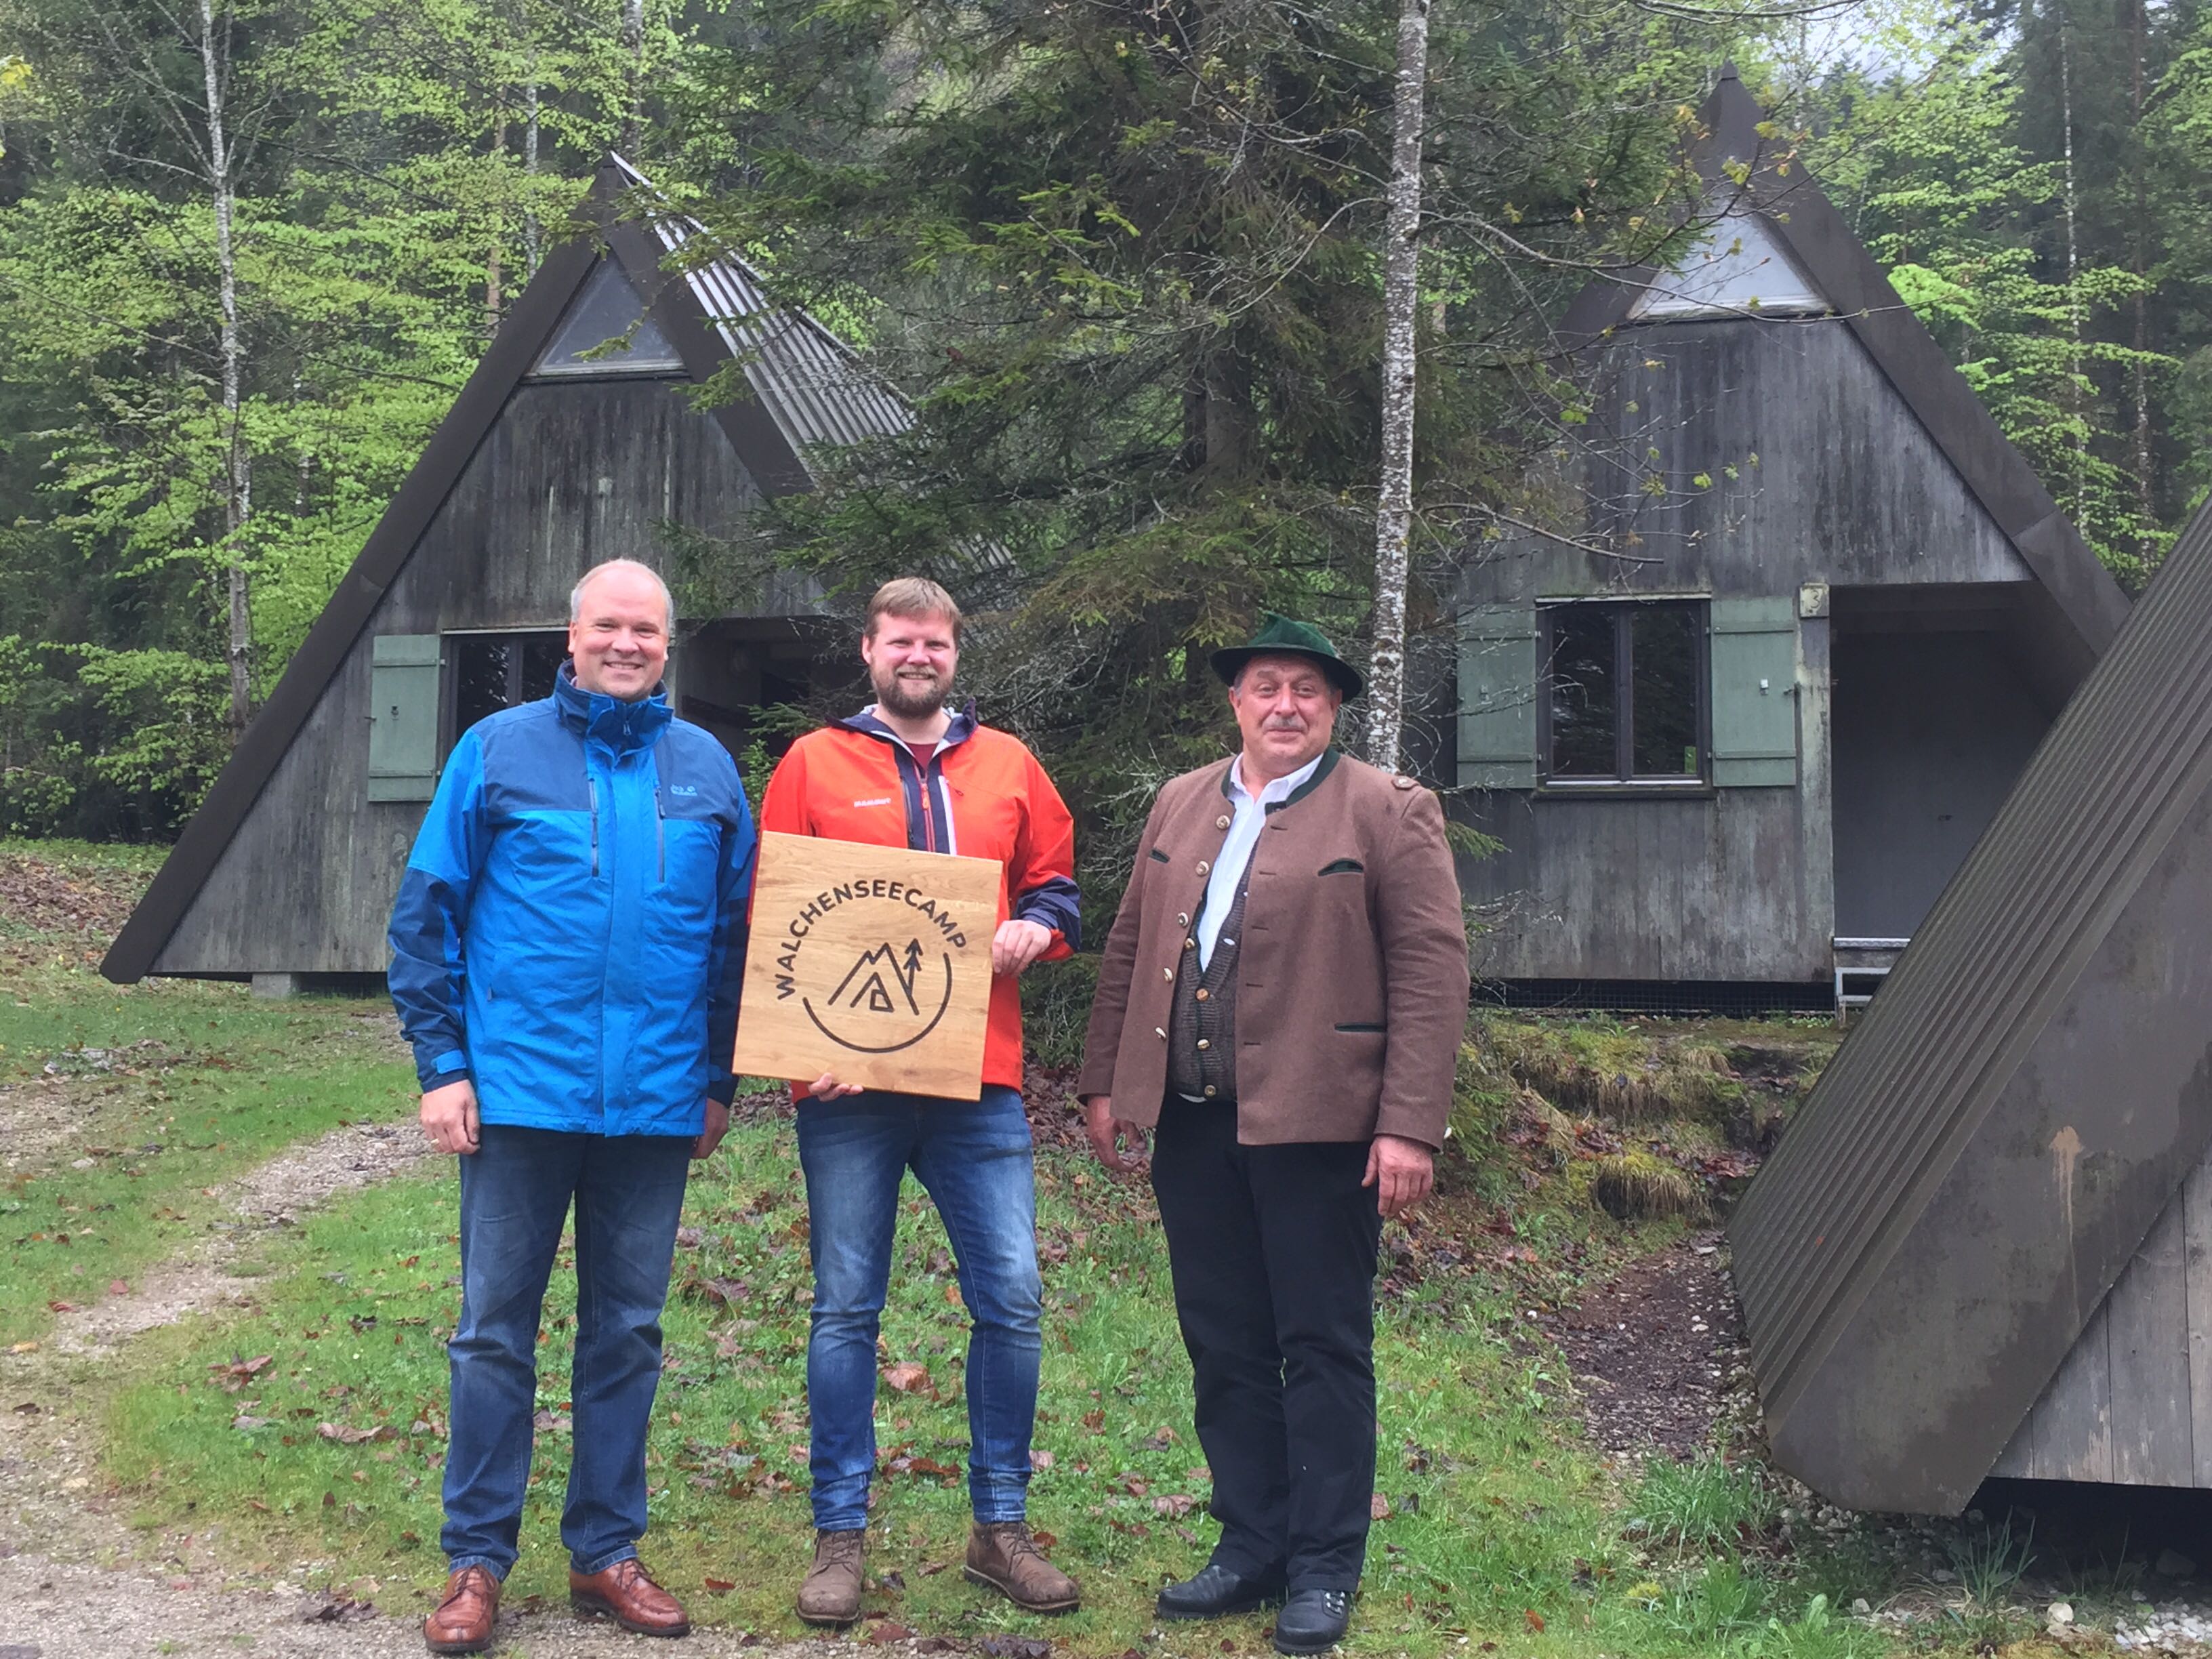 Landrat Christoph Göbel, KJR-Vorsitzender Jan Museler und Jachenaus Erster Bürgermeister Klaus Rauchenberger mit dem neuen Walchenseecamp-Logo vor den Zelthütten